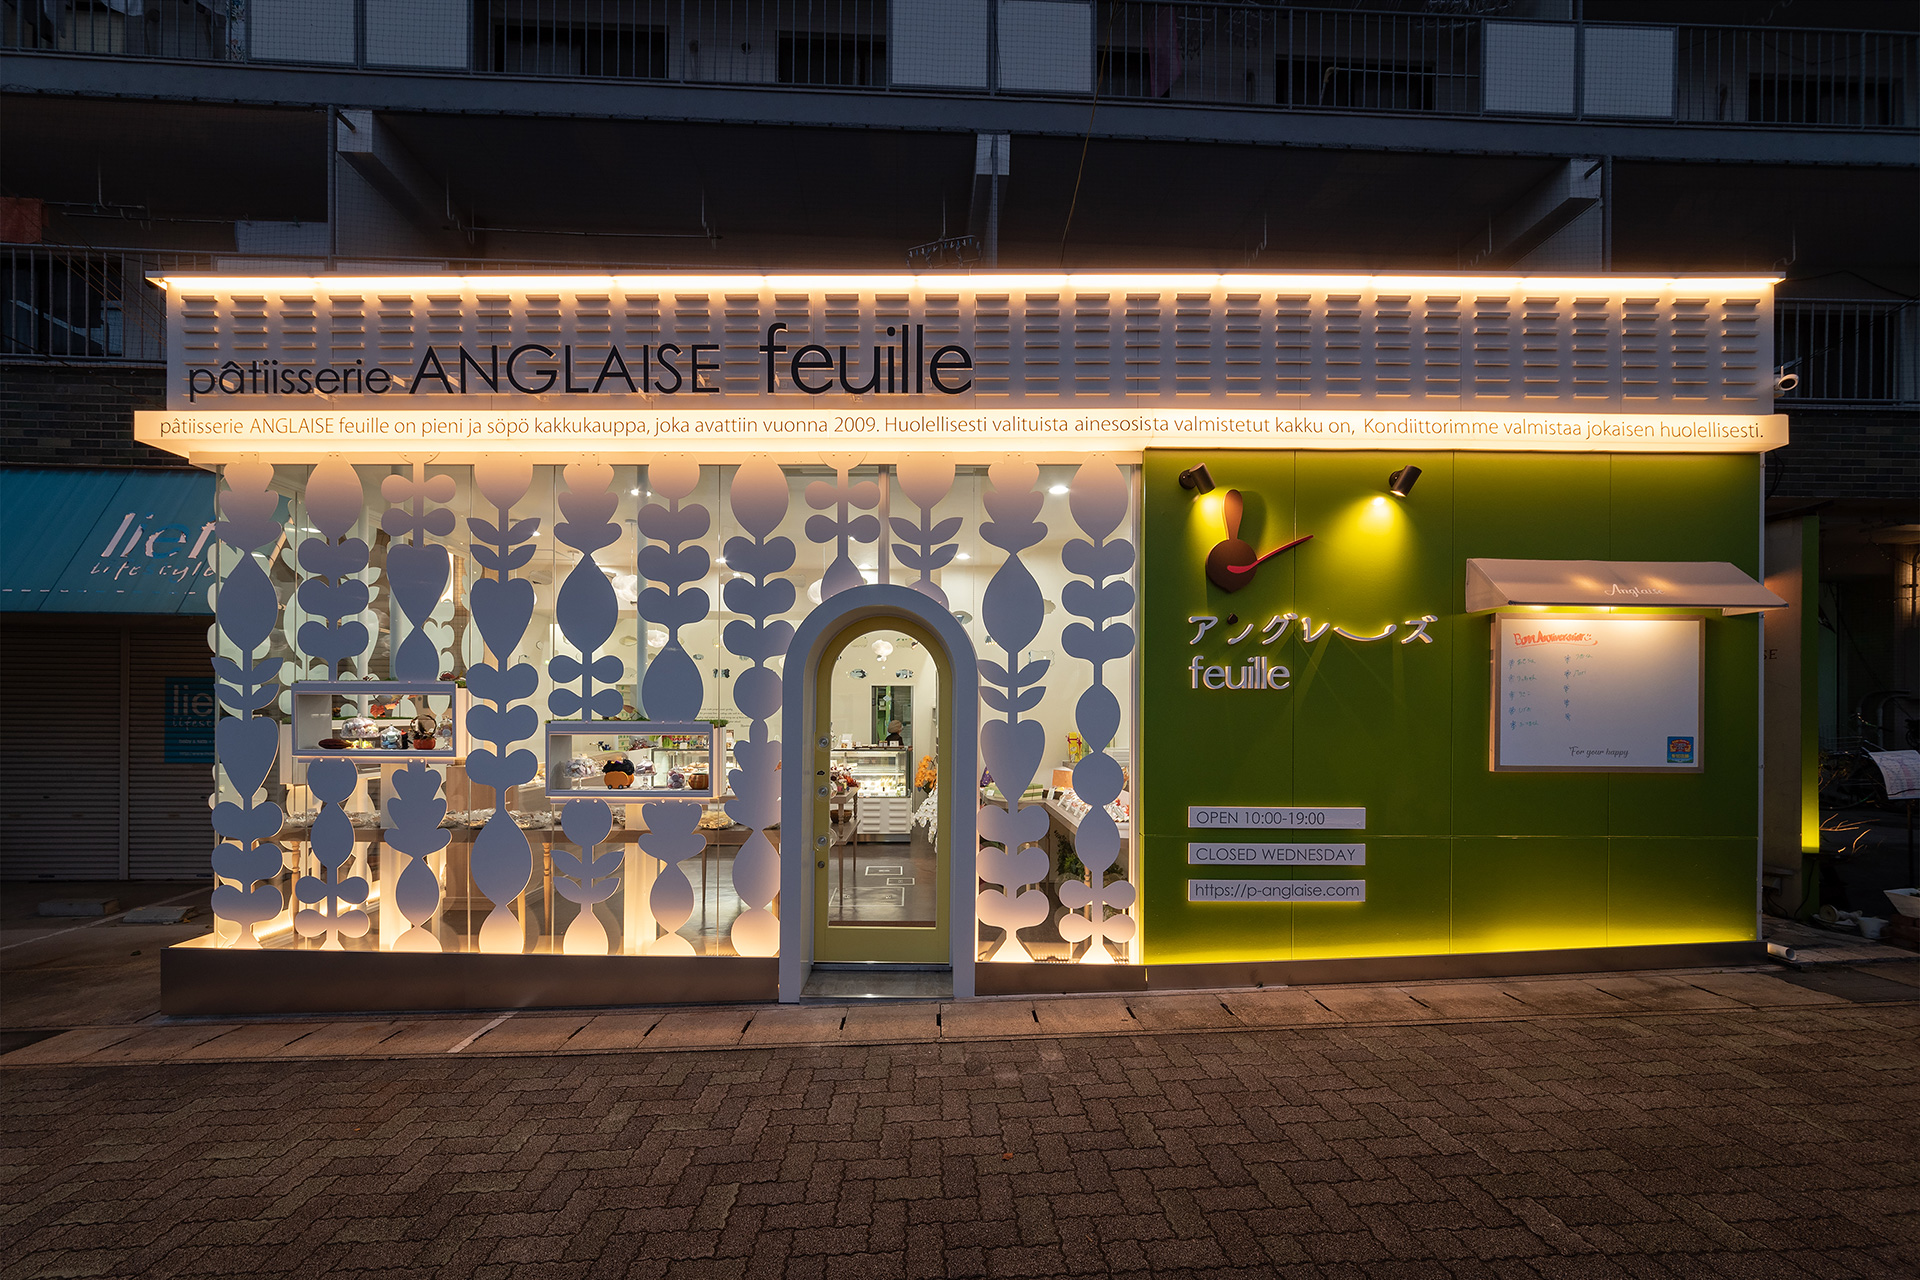 “ケーキショップ、カフェのデザイン設計なら愛知県名古屋のスーパーボギープランニング”